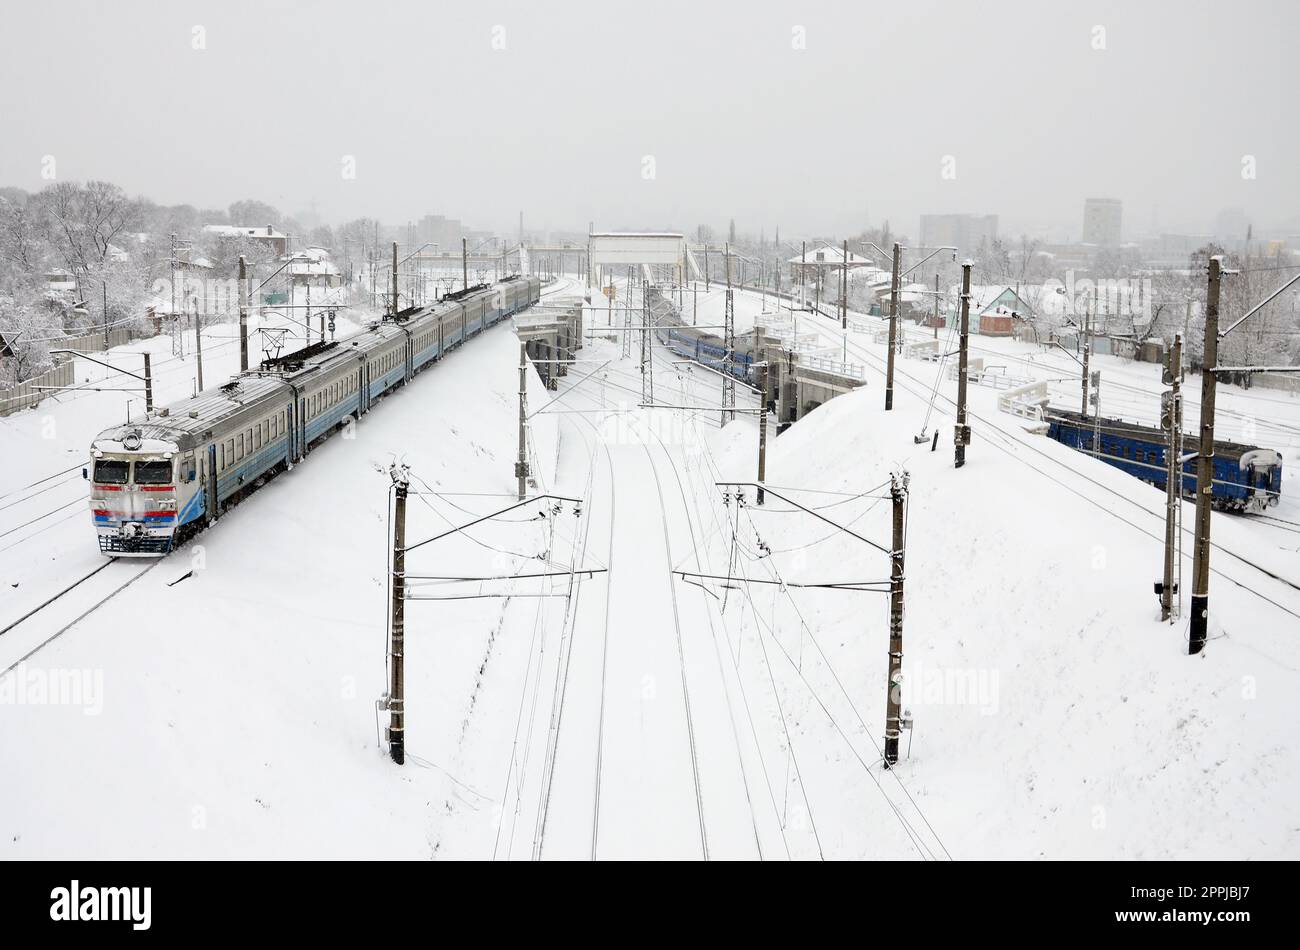 Un long train de voitures de tourisme se déplace le long de la voie ferrée. Paysage ferroviaire en hiver après les chutes de neige Banque D'Images